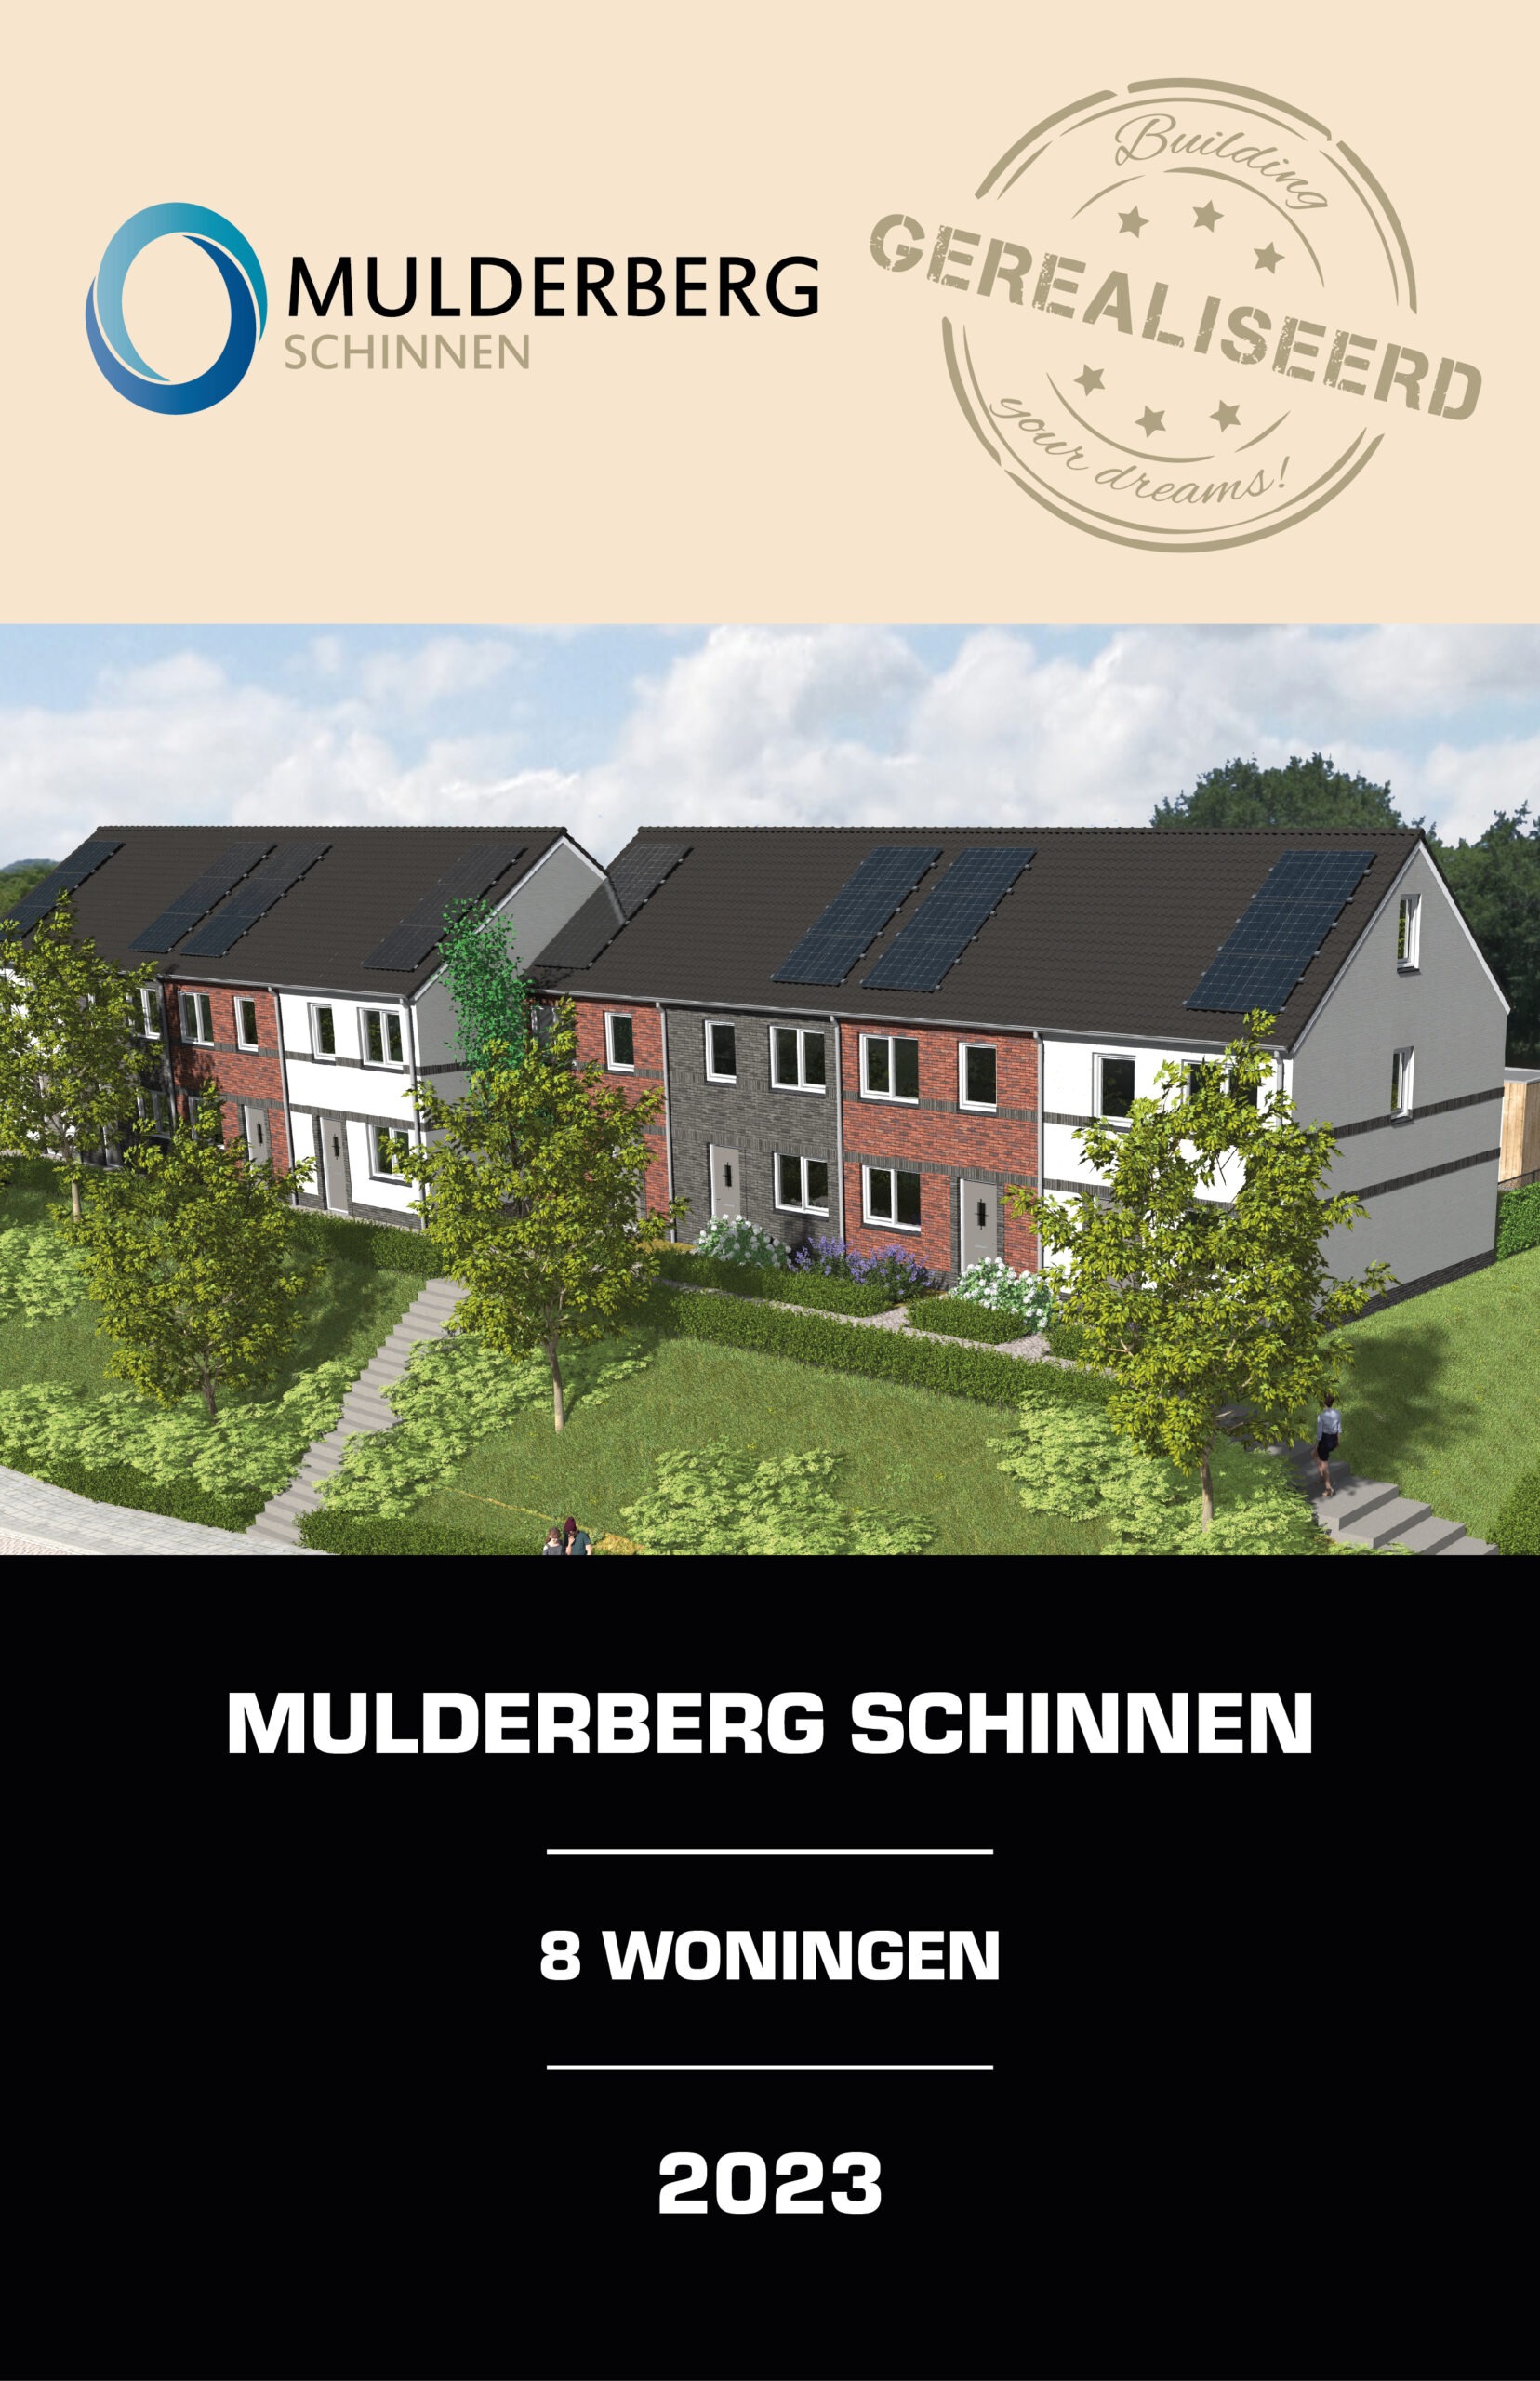 gerealiseerd display Mulderberg Schinnen 16x9